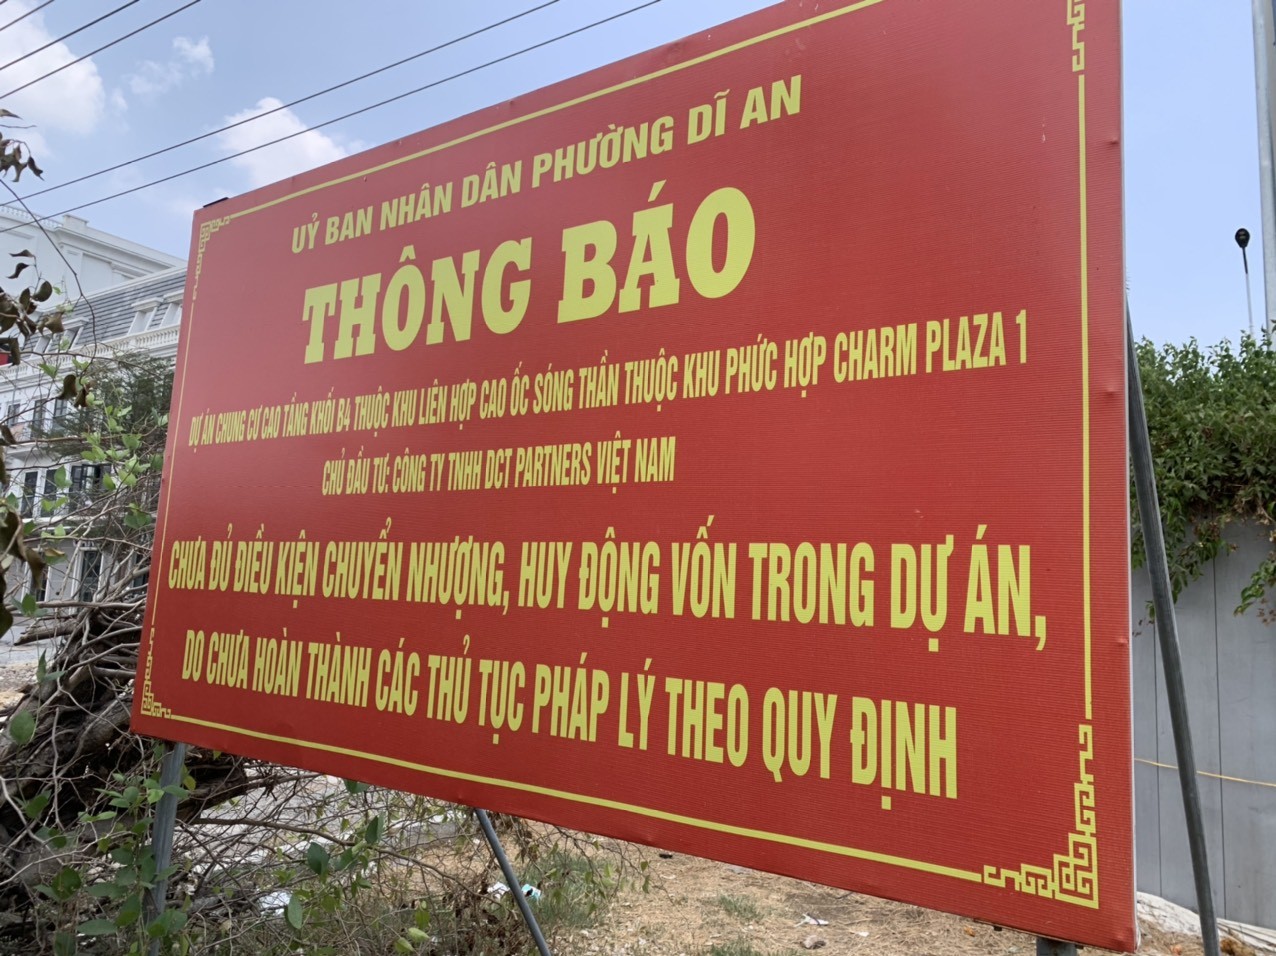 Immobilier - Binh Duong : Conseiller aux acheteurs d'appartements de faire attention à la légalité du projet Charm Diamond